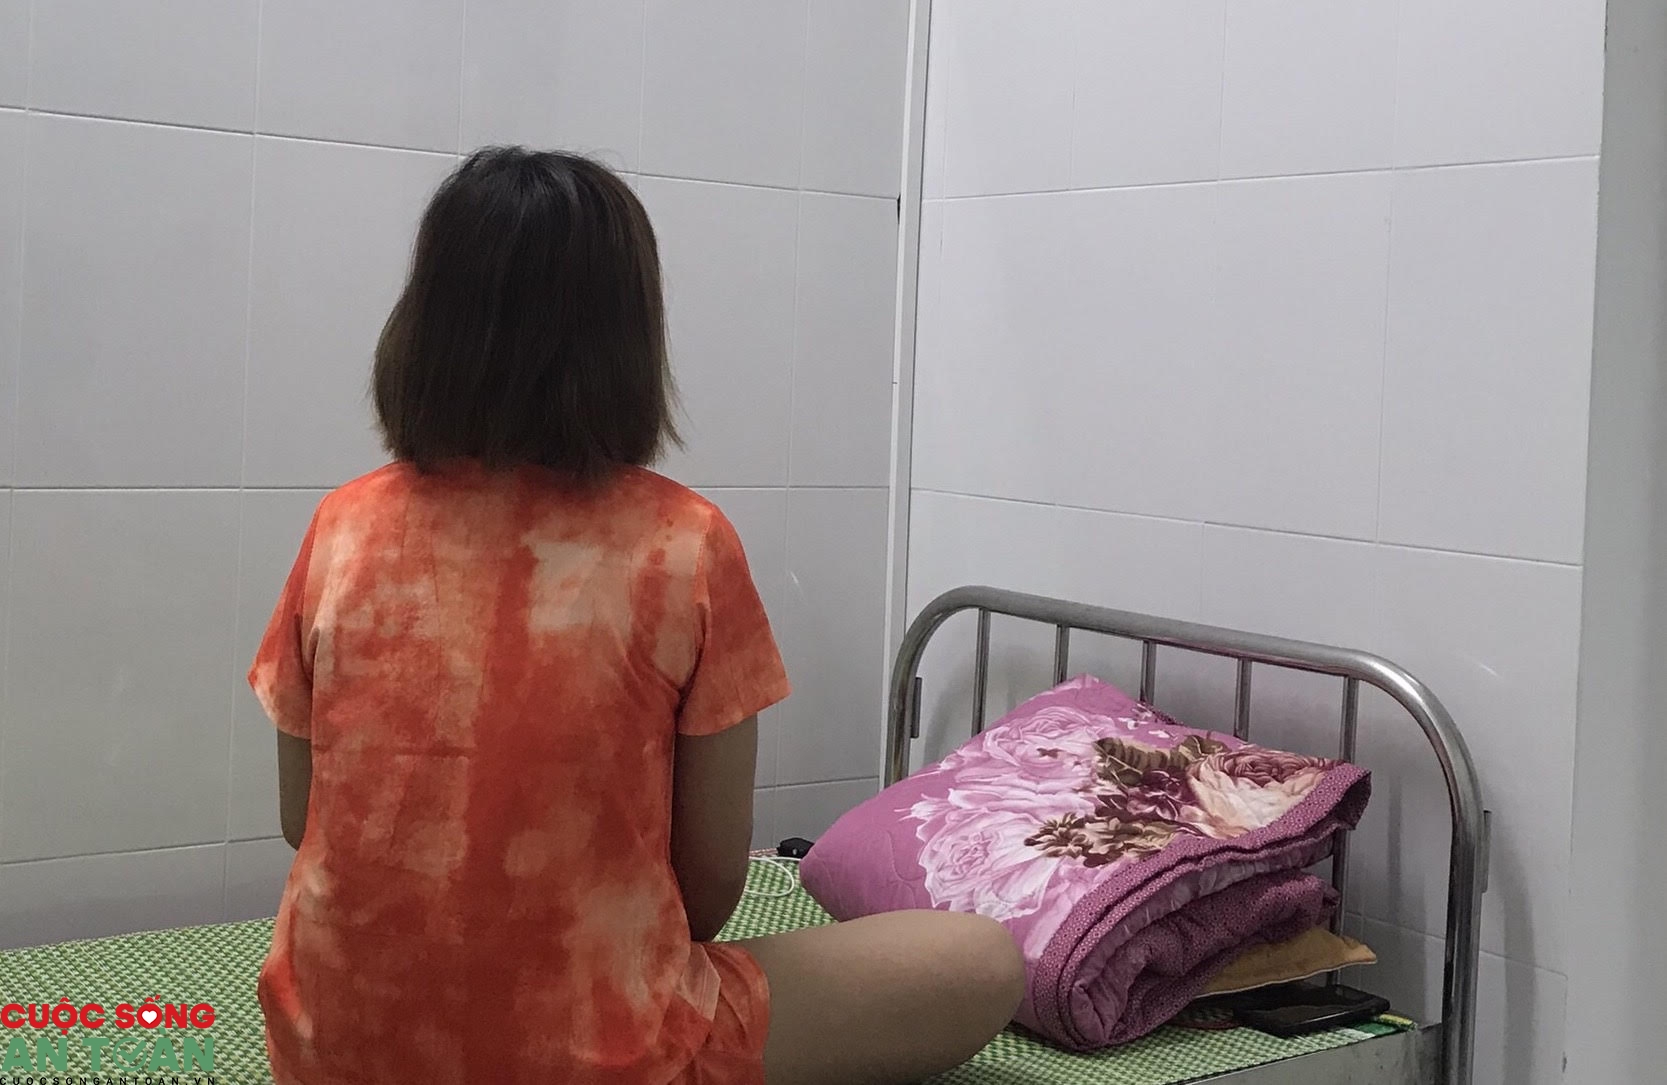 Trải lòng của những công nhân nhiễm Covid-19 trong tâm dịch Bắc Giang